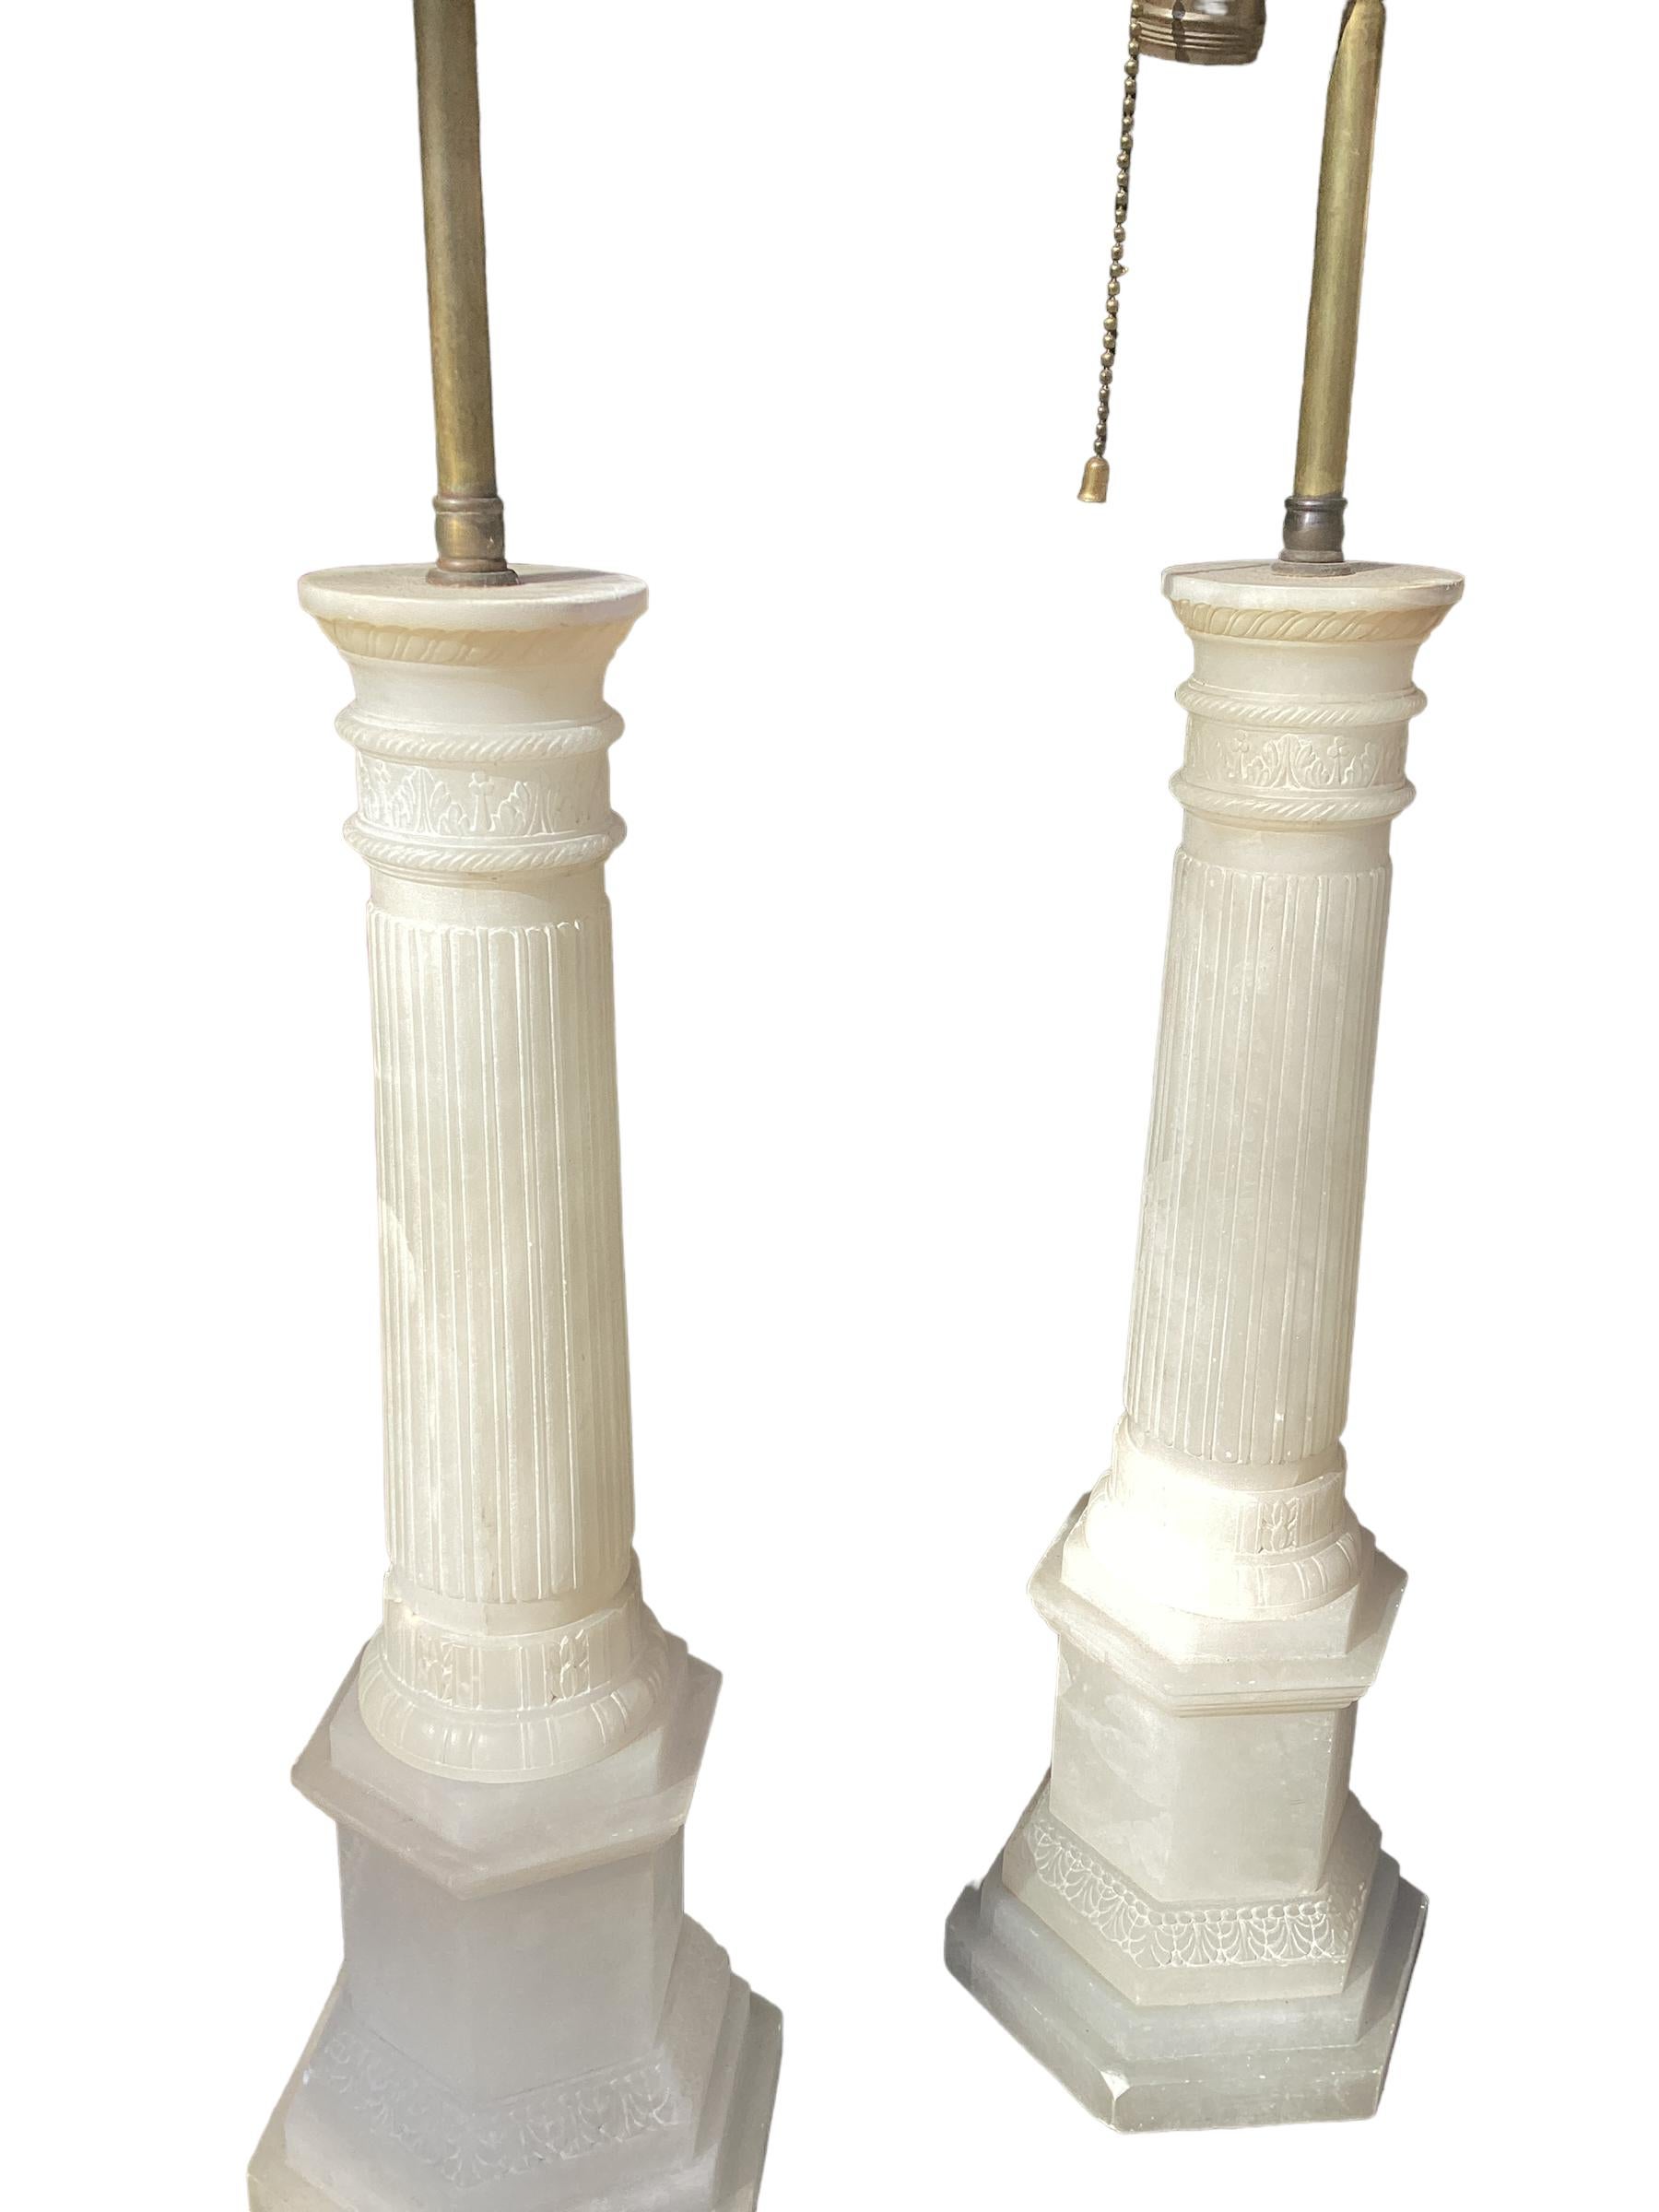 Paar italienische Alabaster-Säulenlampen. Jeweils mit einer geriffelten Säule mit runden Kapitellen, die auf einem sechseckigen Sockel steht. Die Oberseite des Doppelcluster-Sockels ist mit einem verstellbaren Rohr versehen, mit dem der Schirm um